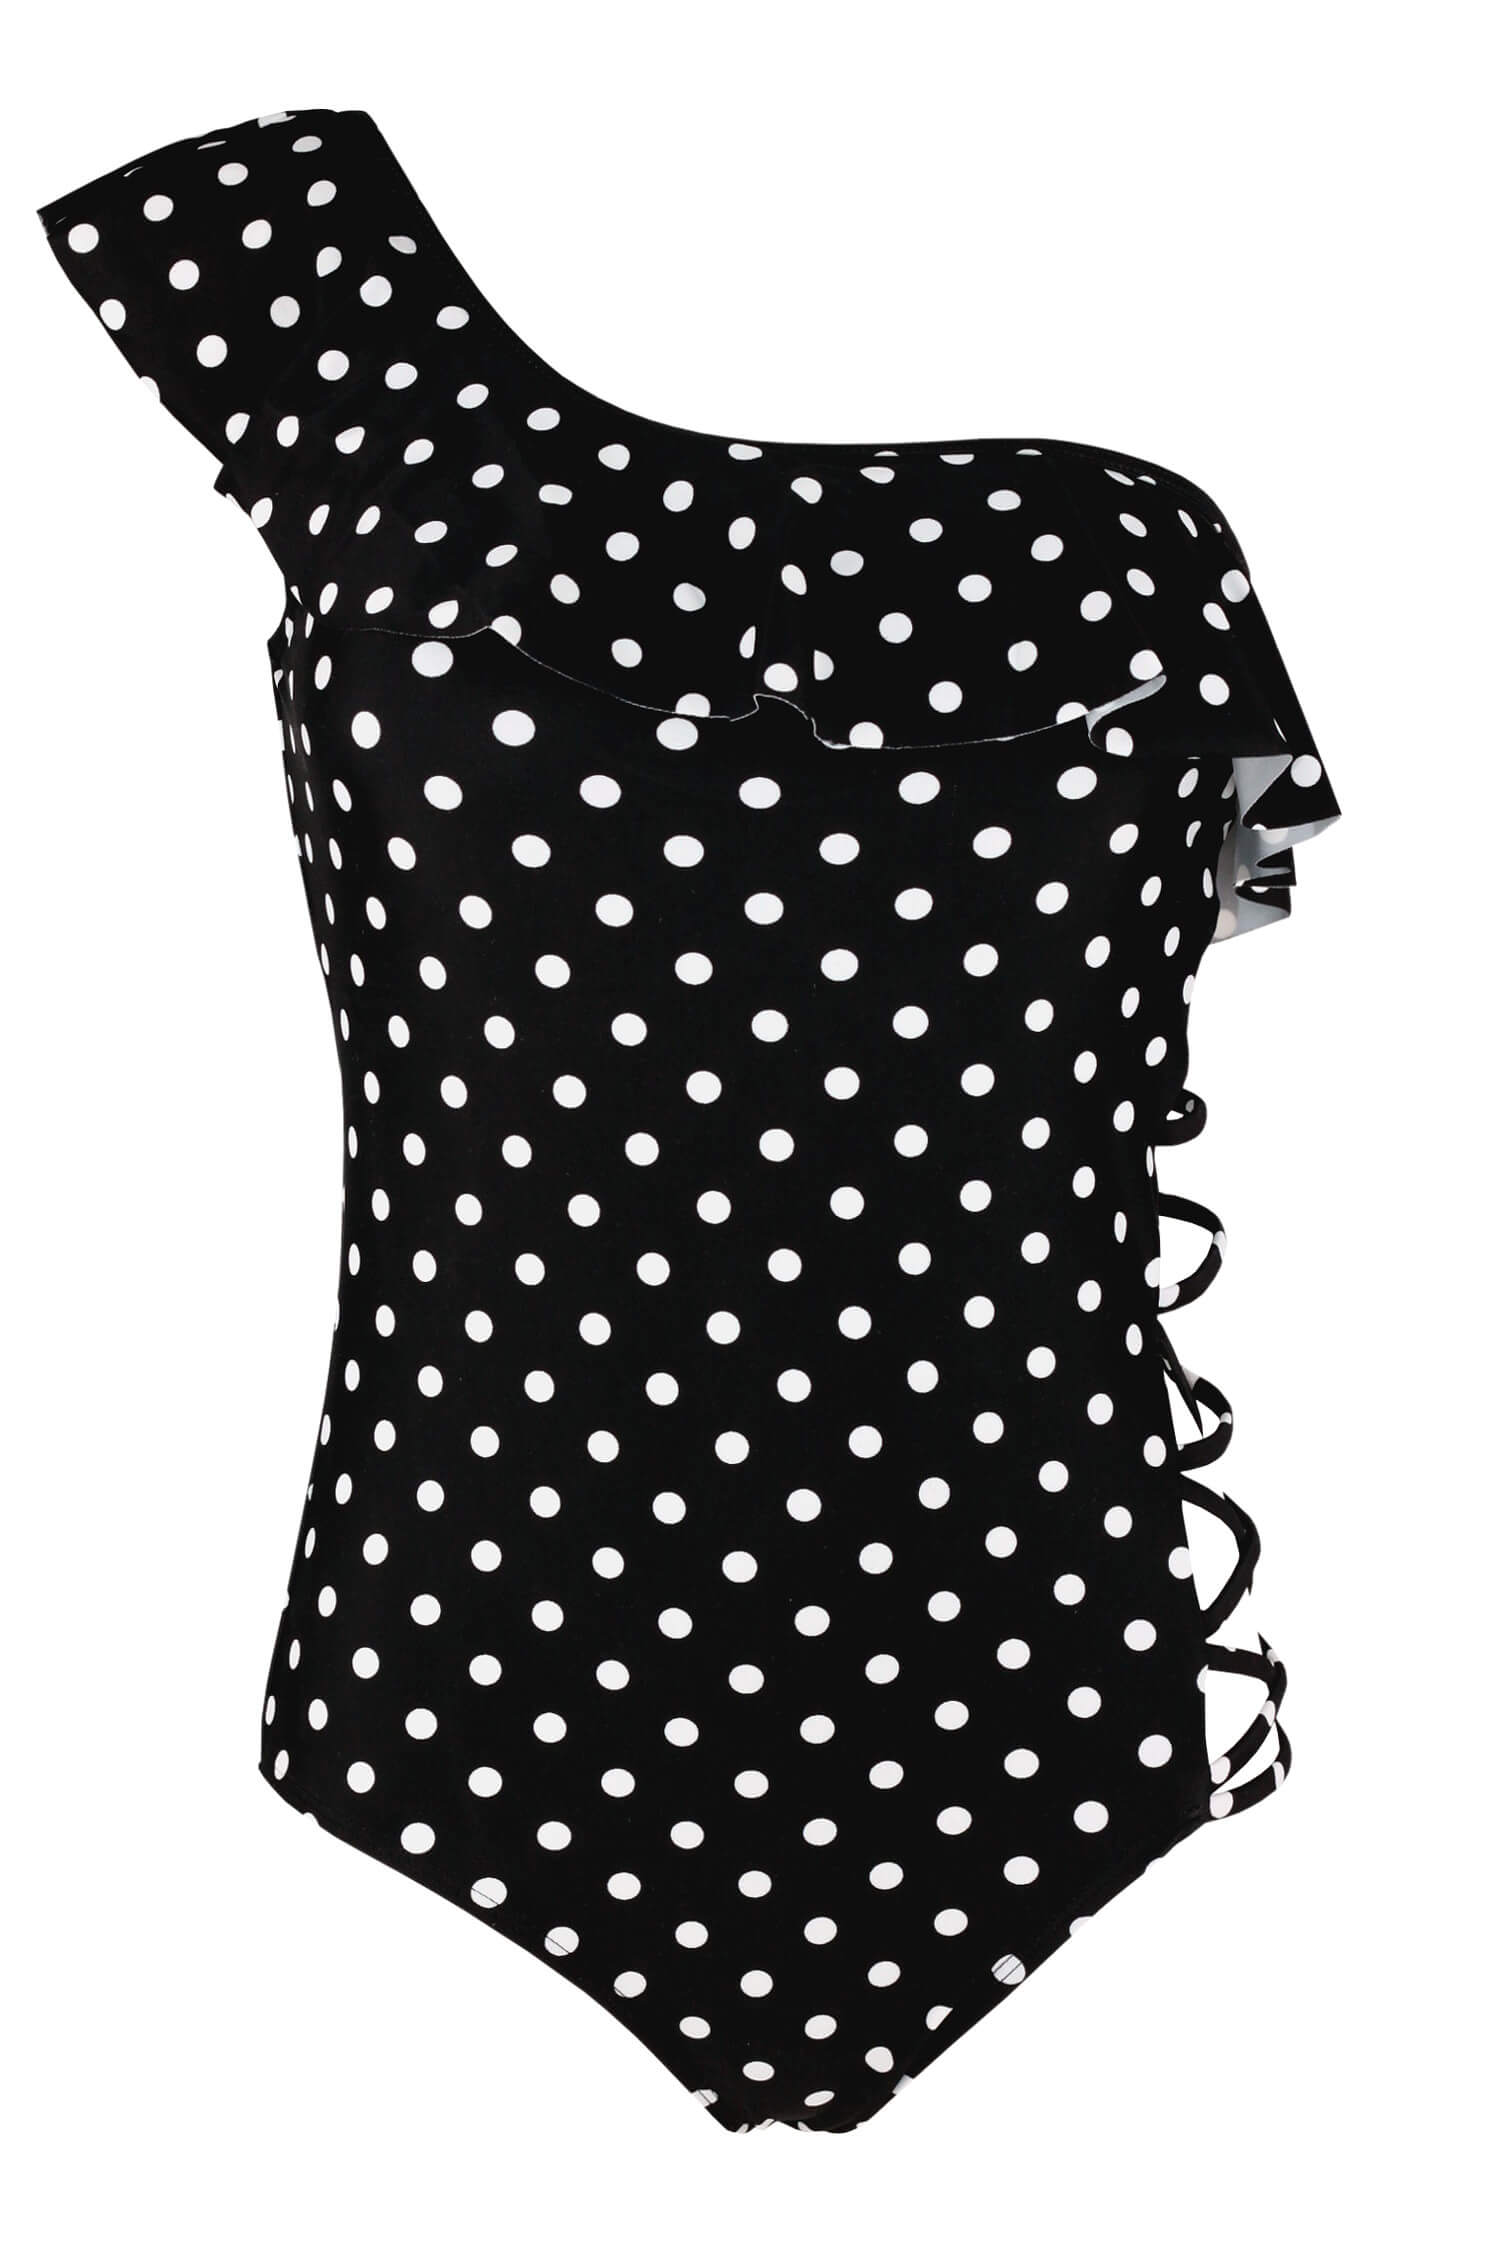 Lapiza Black pin-up styl jednodílné plavky s puntíky AB164 L černá